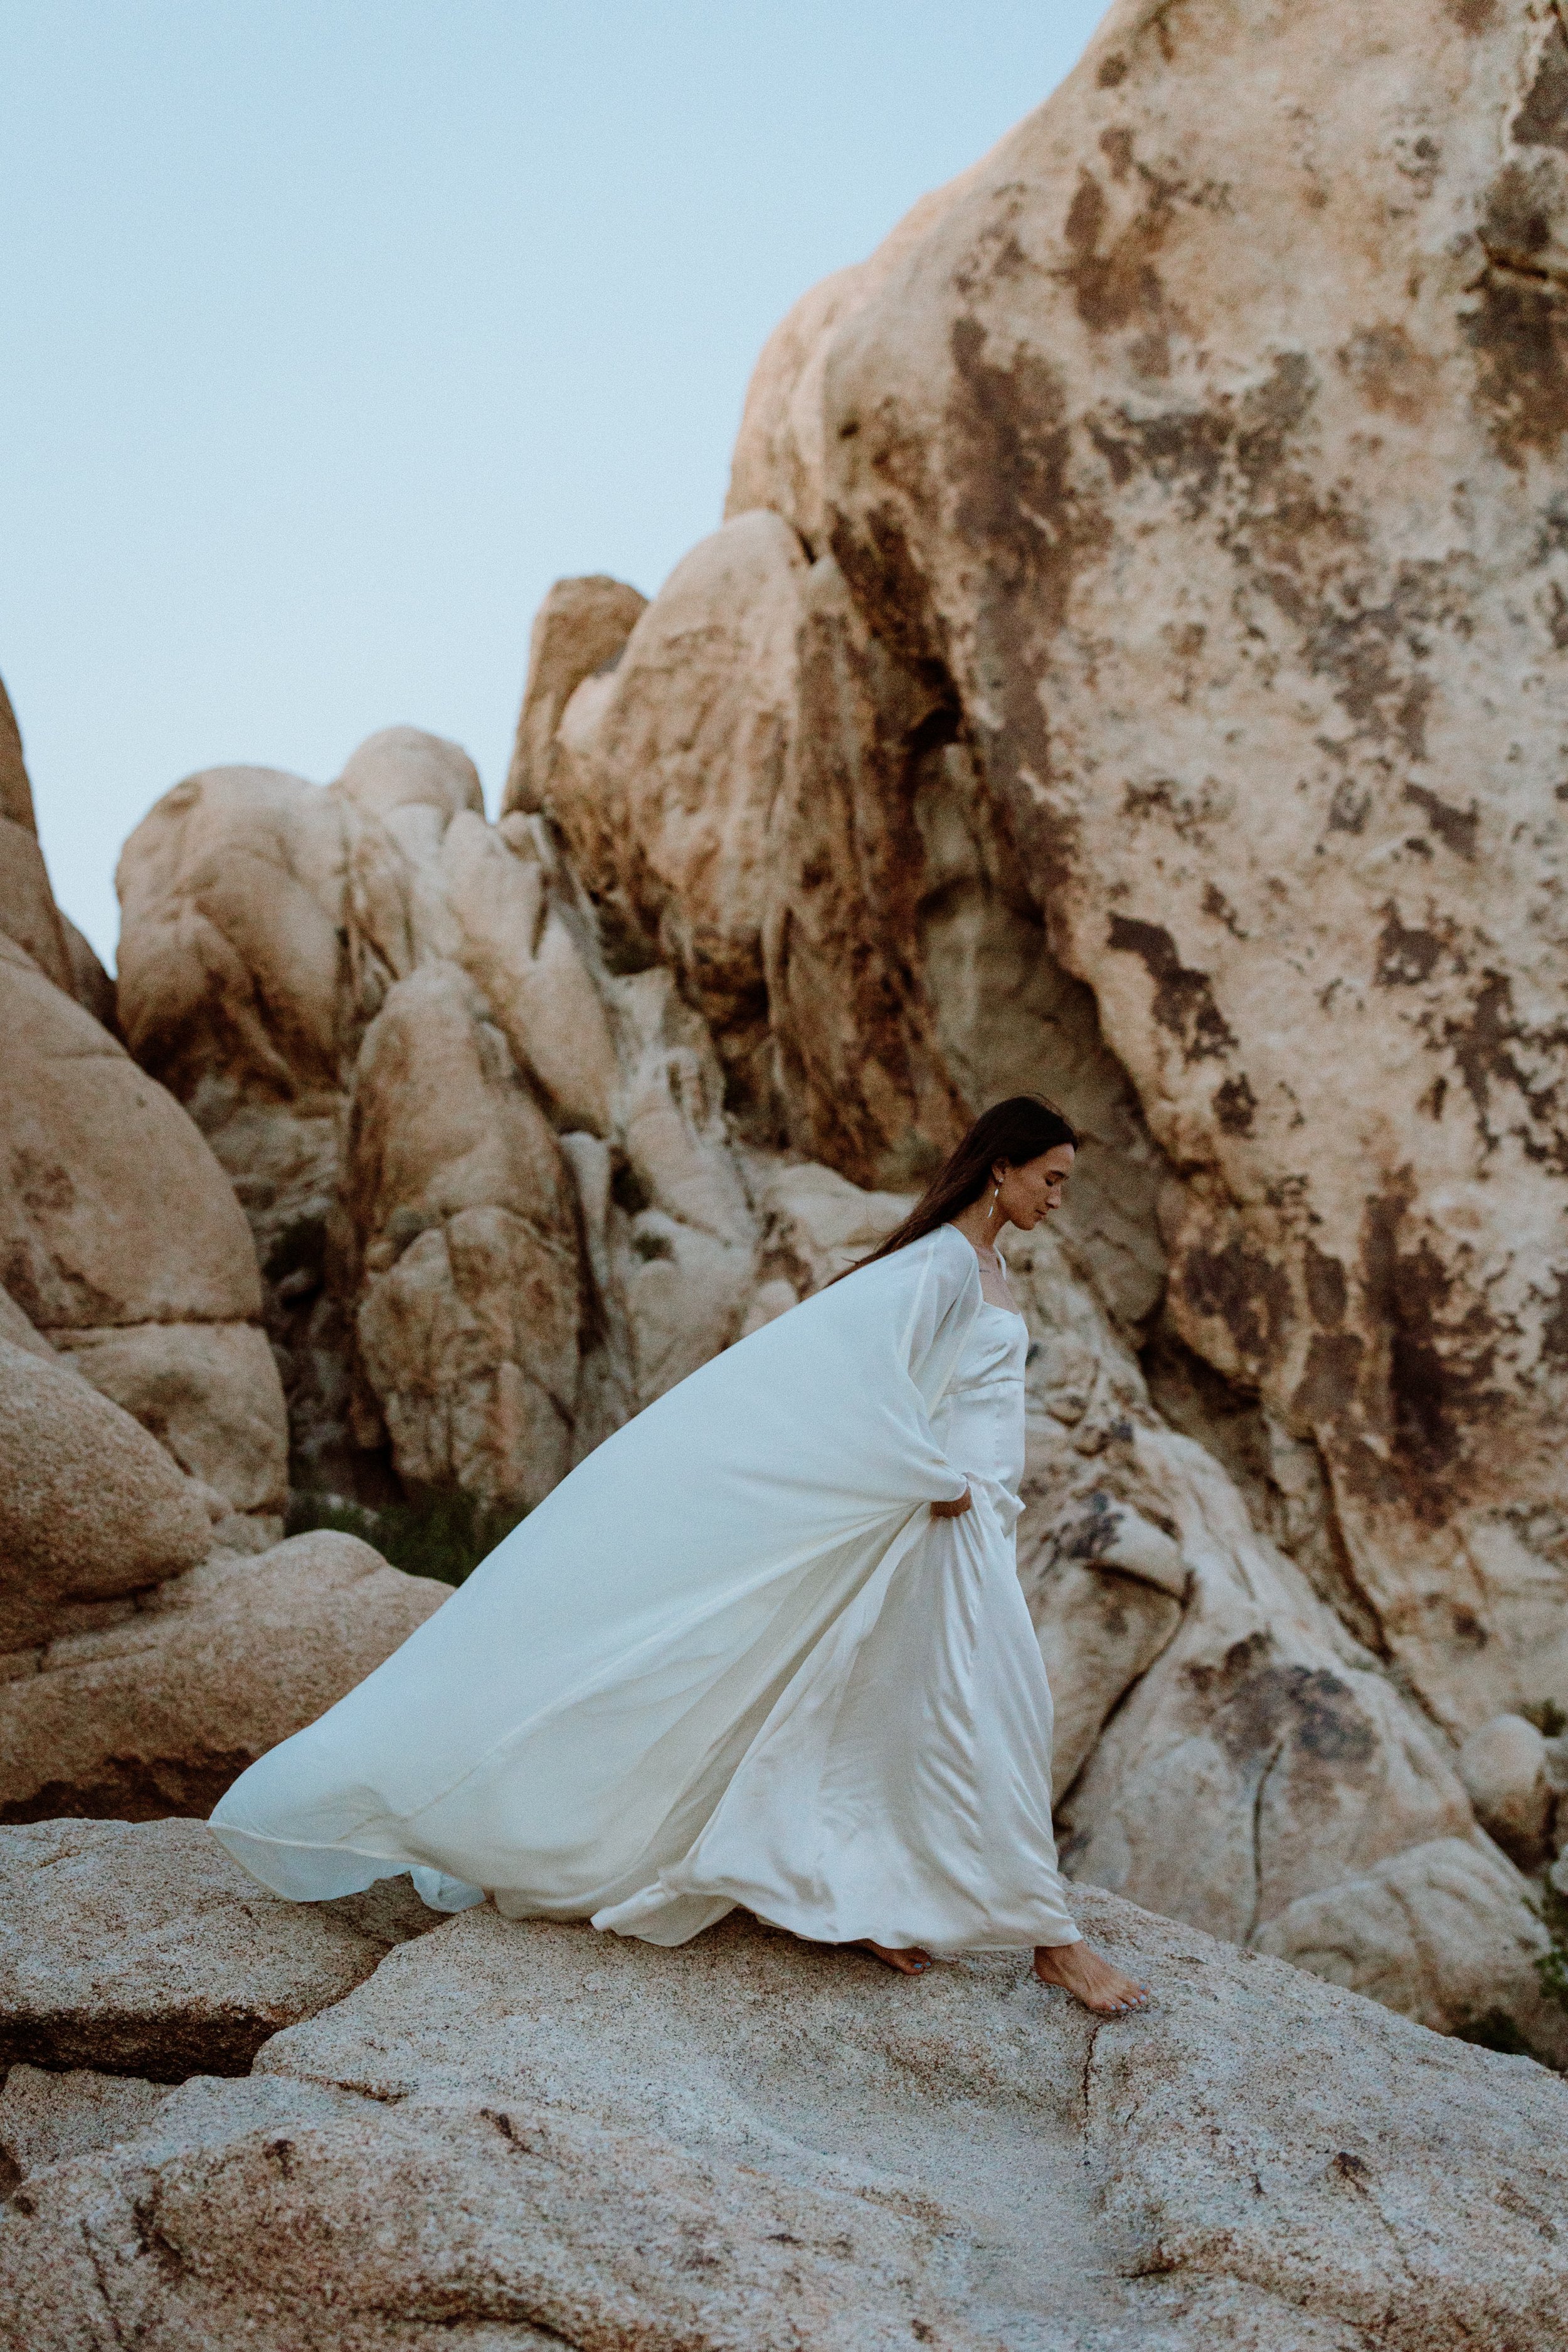  joshua tree desert elopement wedding dress 